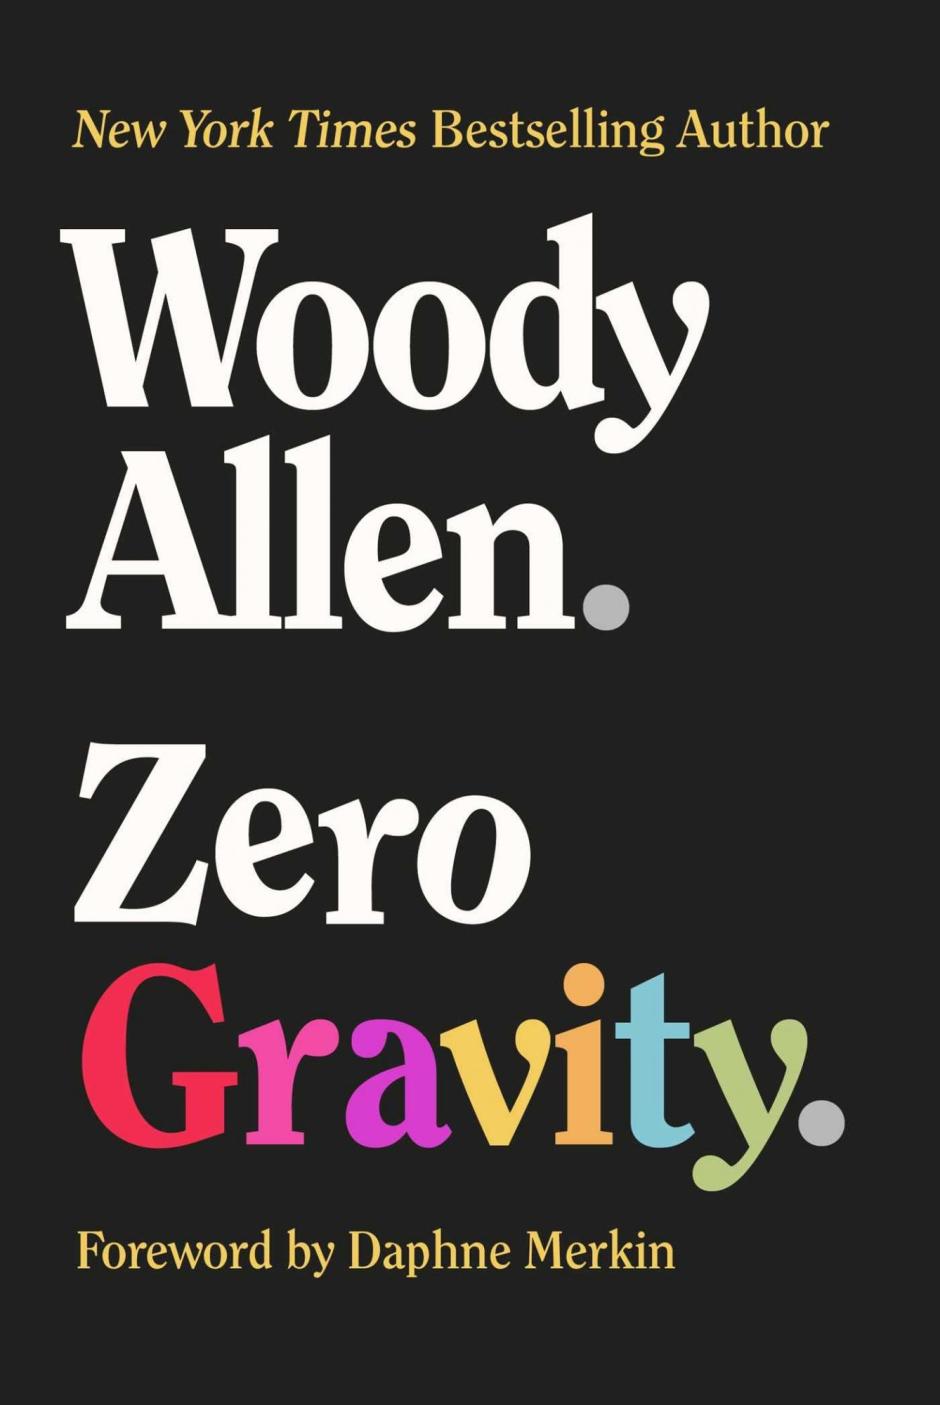 'Zero gravity', el nuevo libro de Woody Allen, es una recopilación de ensayos humorísticos